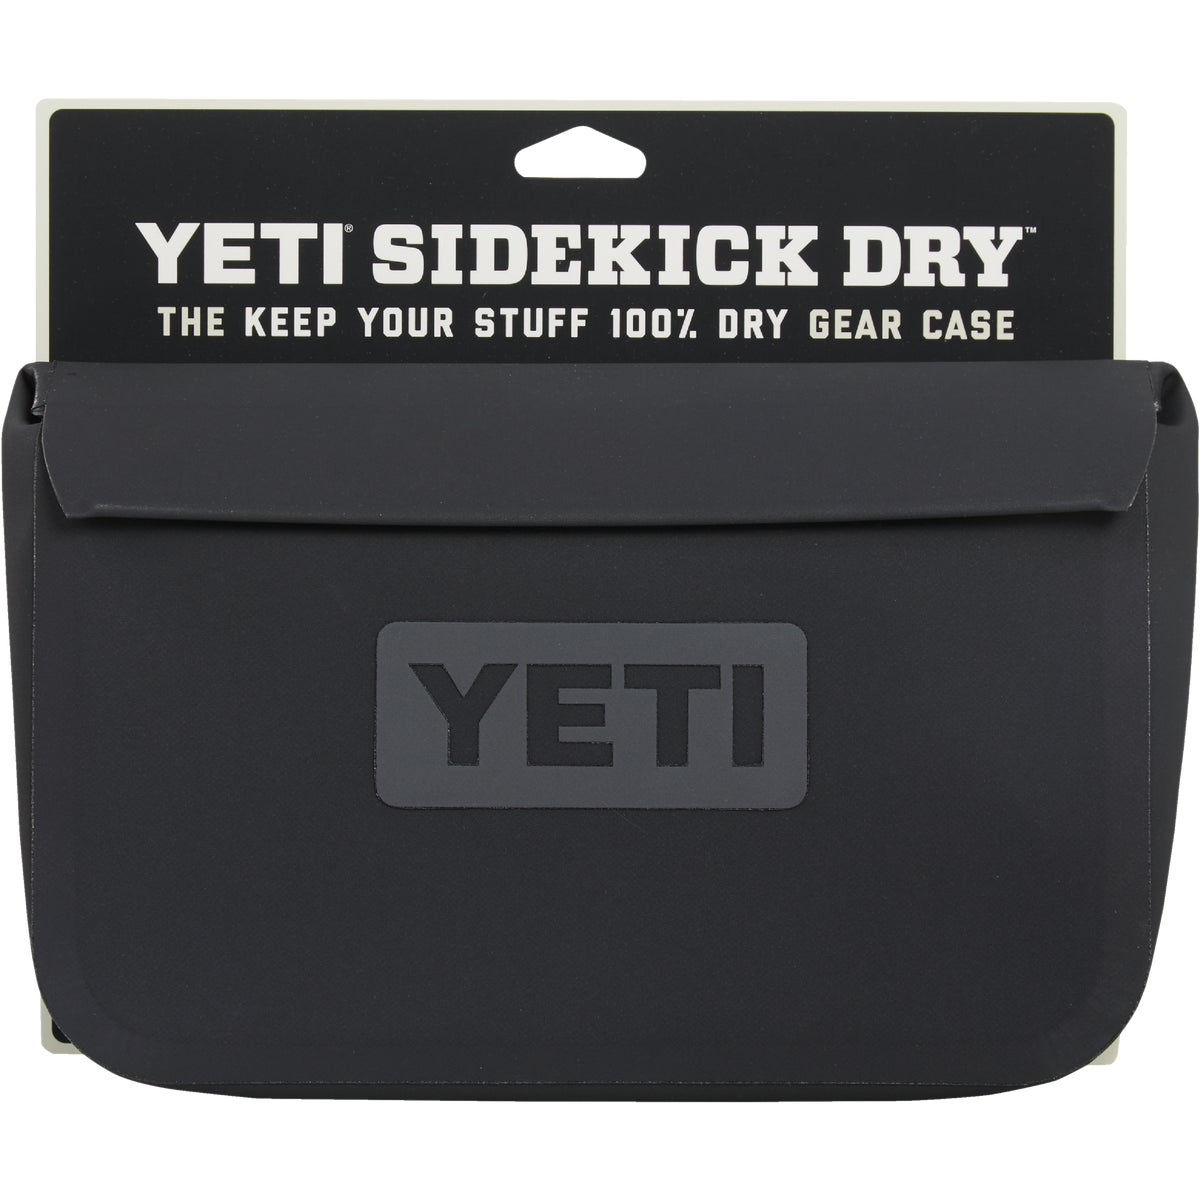 Yeti SideKick Dry 11 In. Charcoal Storage Pouch